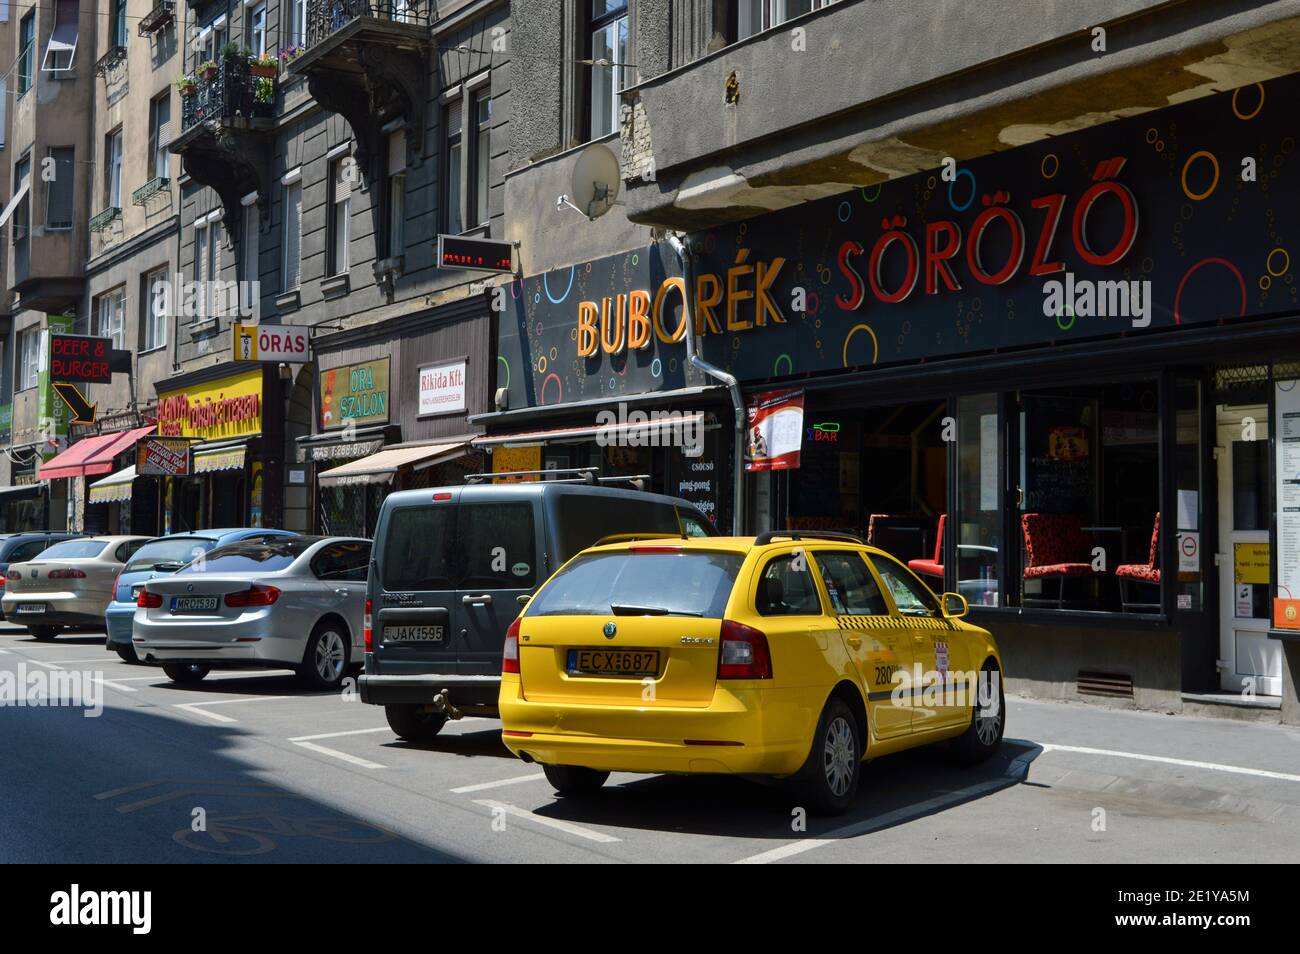 Budapest, Hongrie: Rue dans le centre-ville avec des voitures garées, taxi jaune et bar à bière Buborék Söröző Banque D'Images